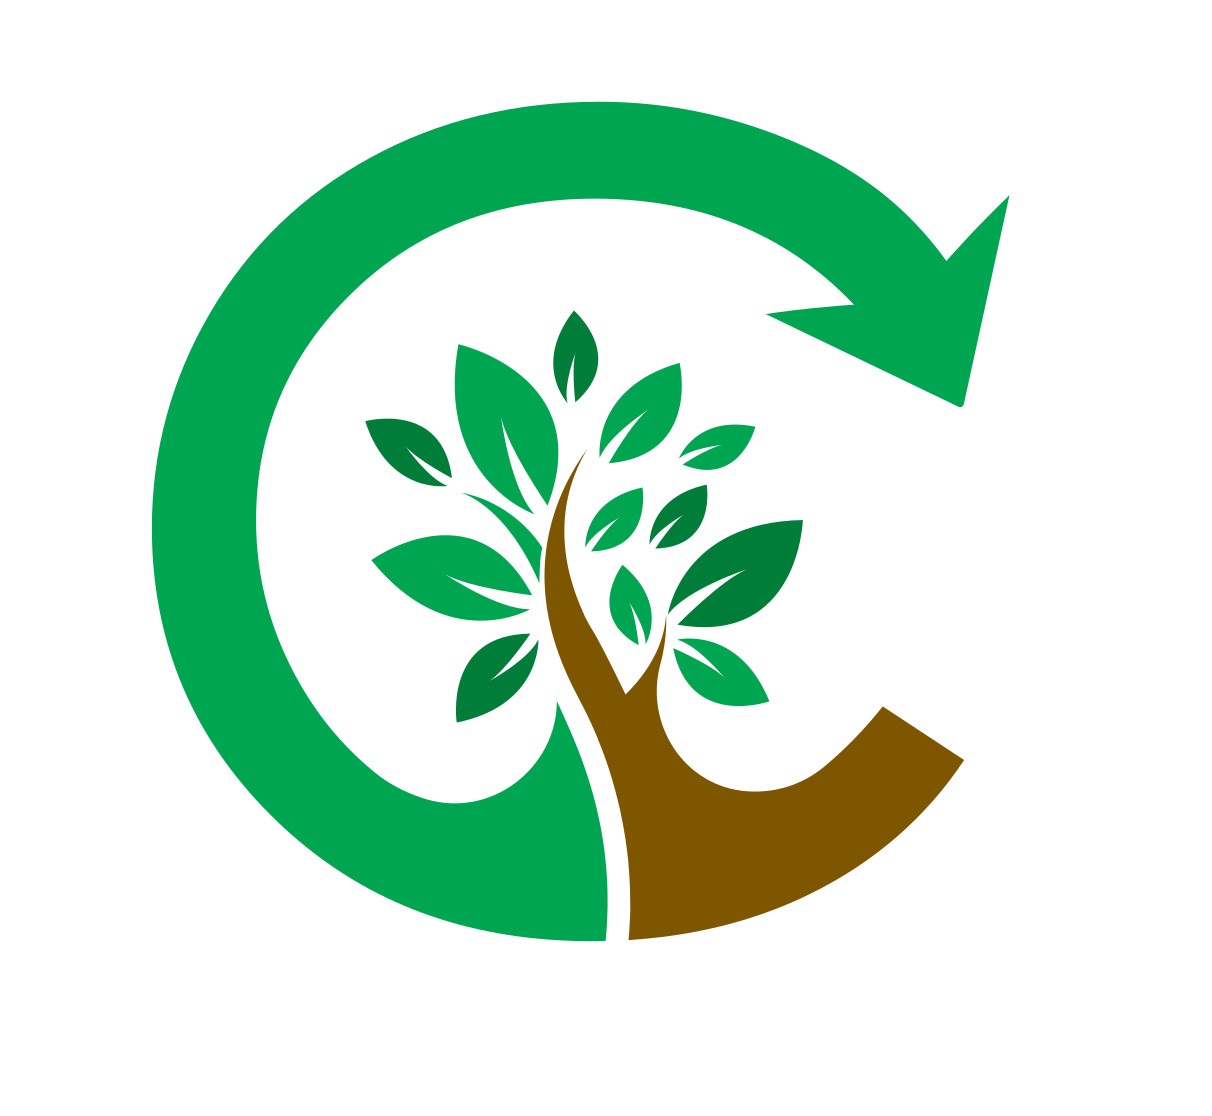 Compost Landes guide les professionnels à mettre en place le tri et la valorisation des déchets organiques